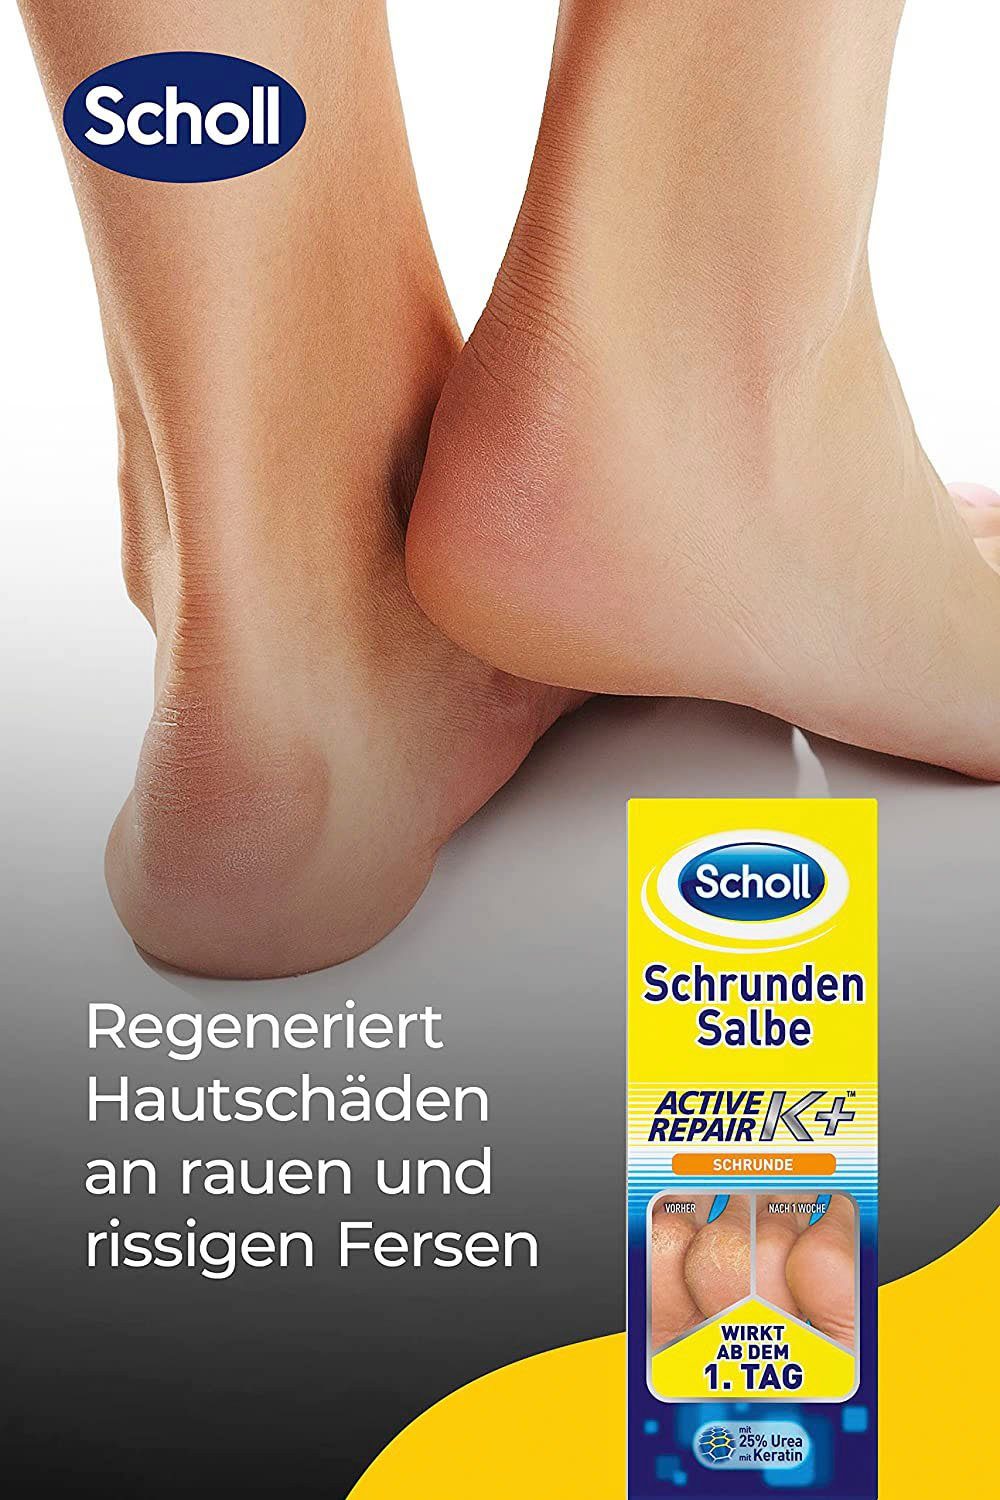 Scholl Fußcreme Active Salbe Schrunden K+, Repair